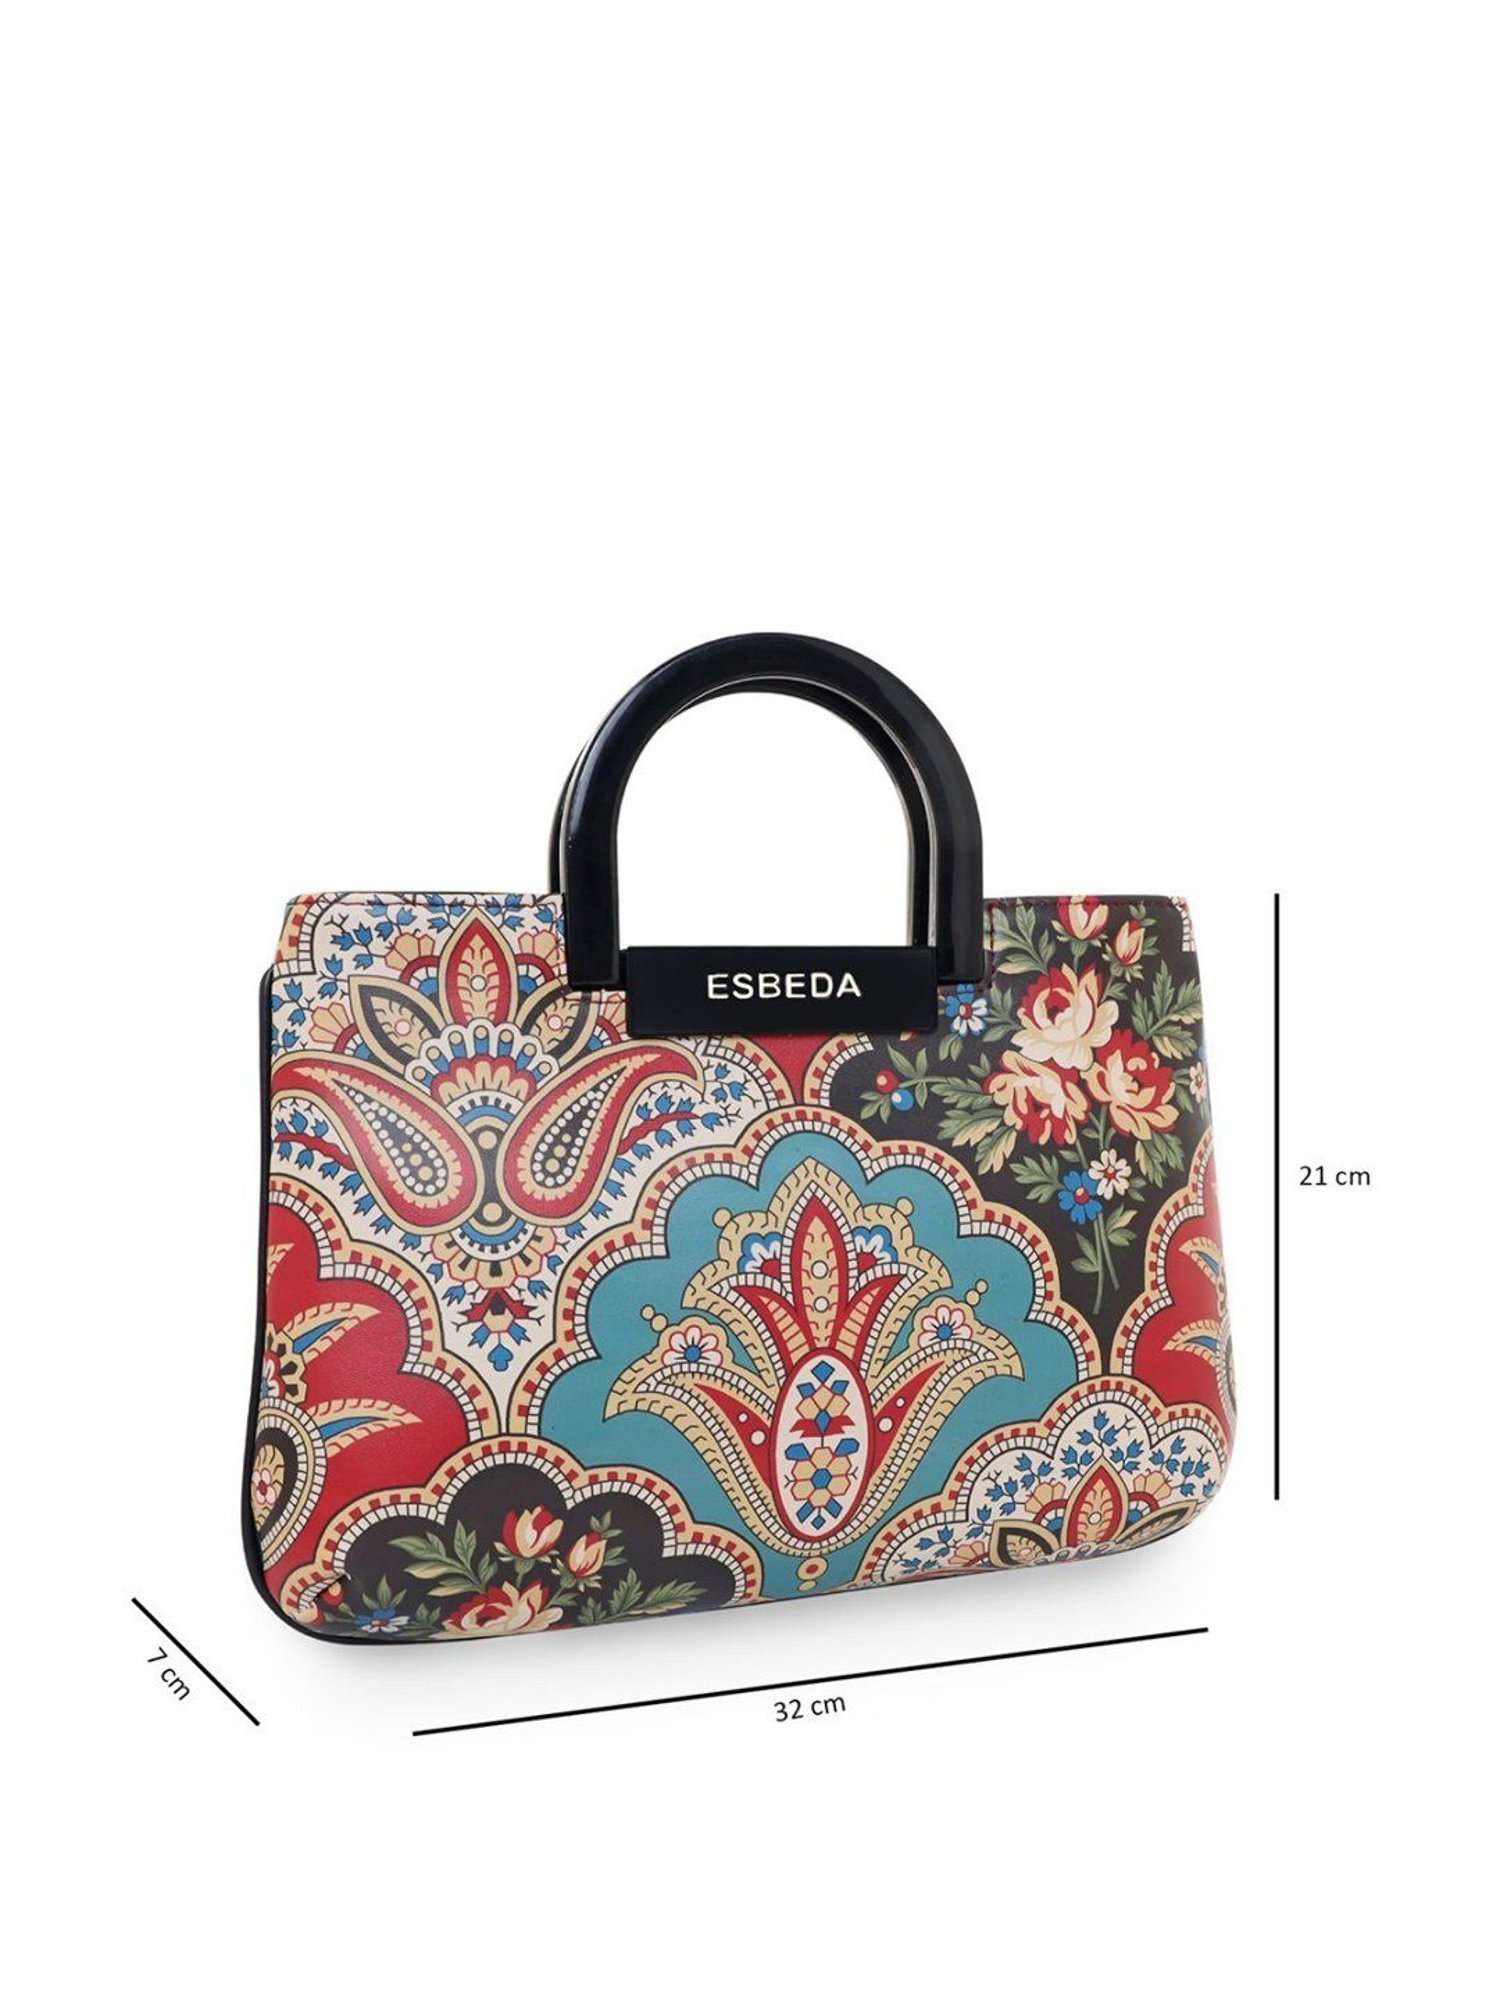 Esbeda - Esbeda handbags are your quotient for Style! 👜... | Facebook